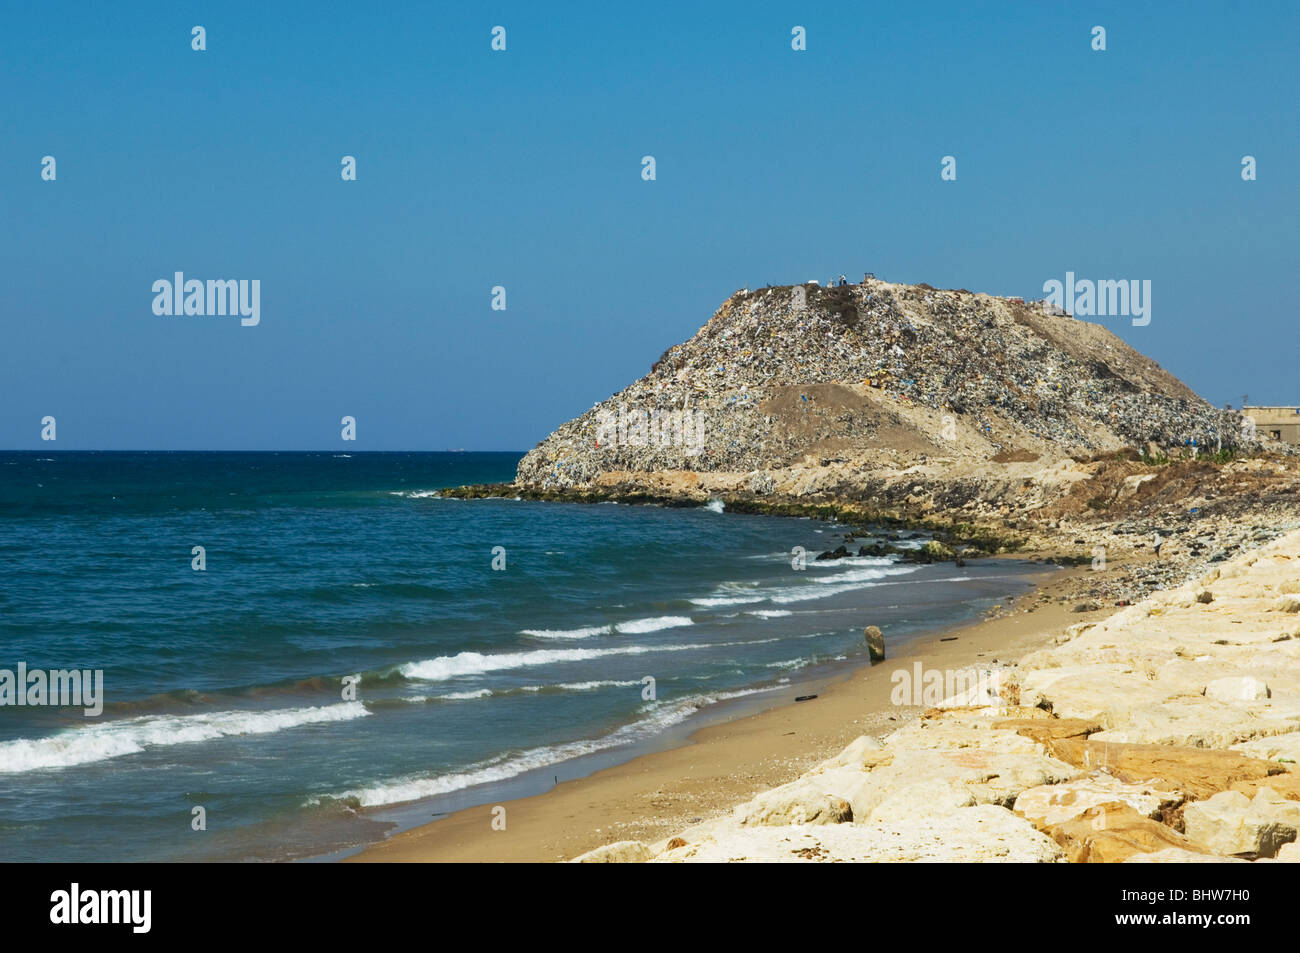 Mountain of garbage dumped on the seashore by the Mediterranean Saida Lebanon Stock Photo